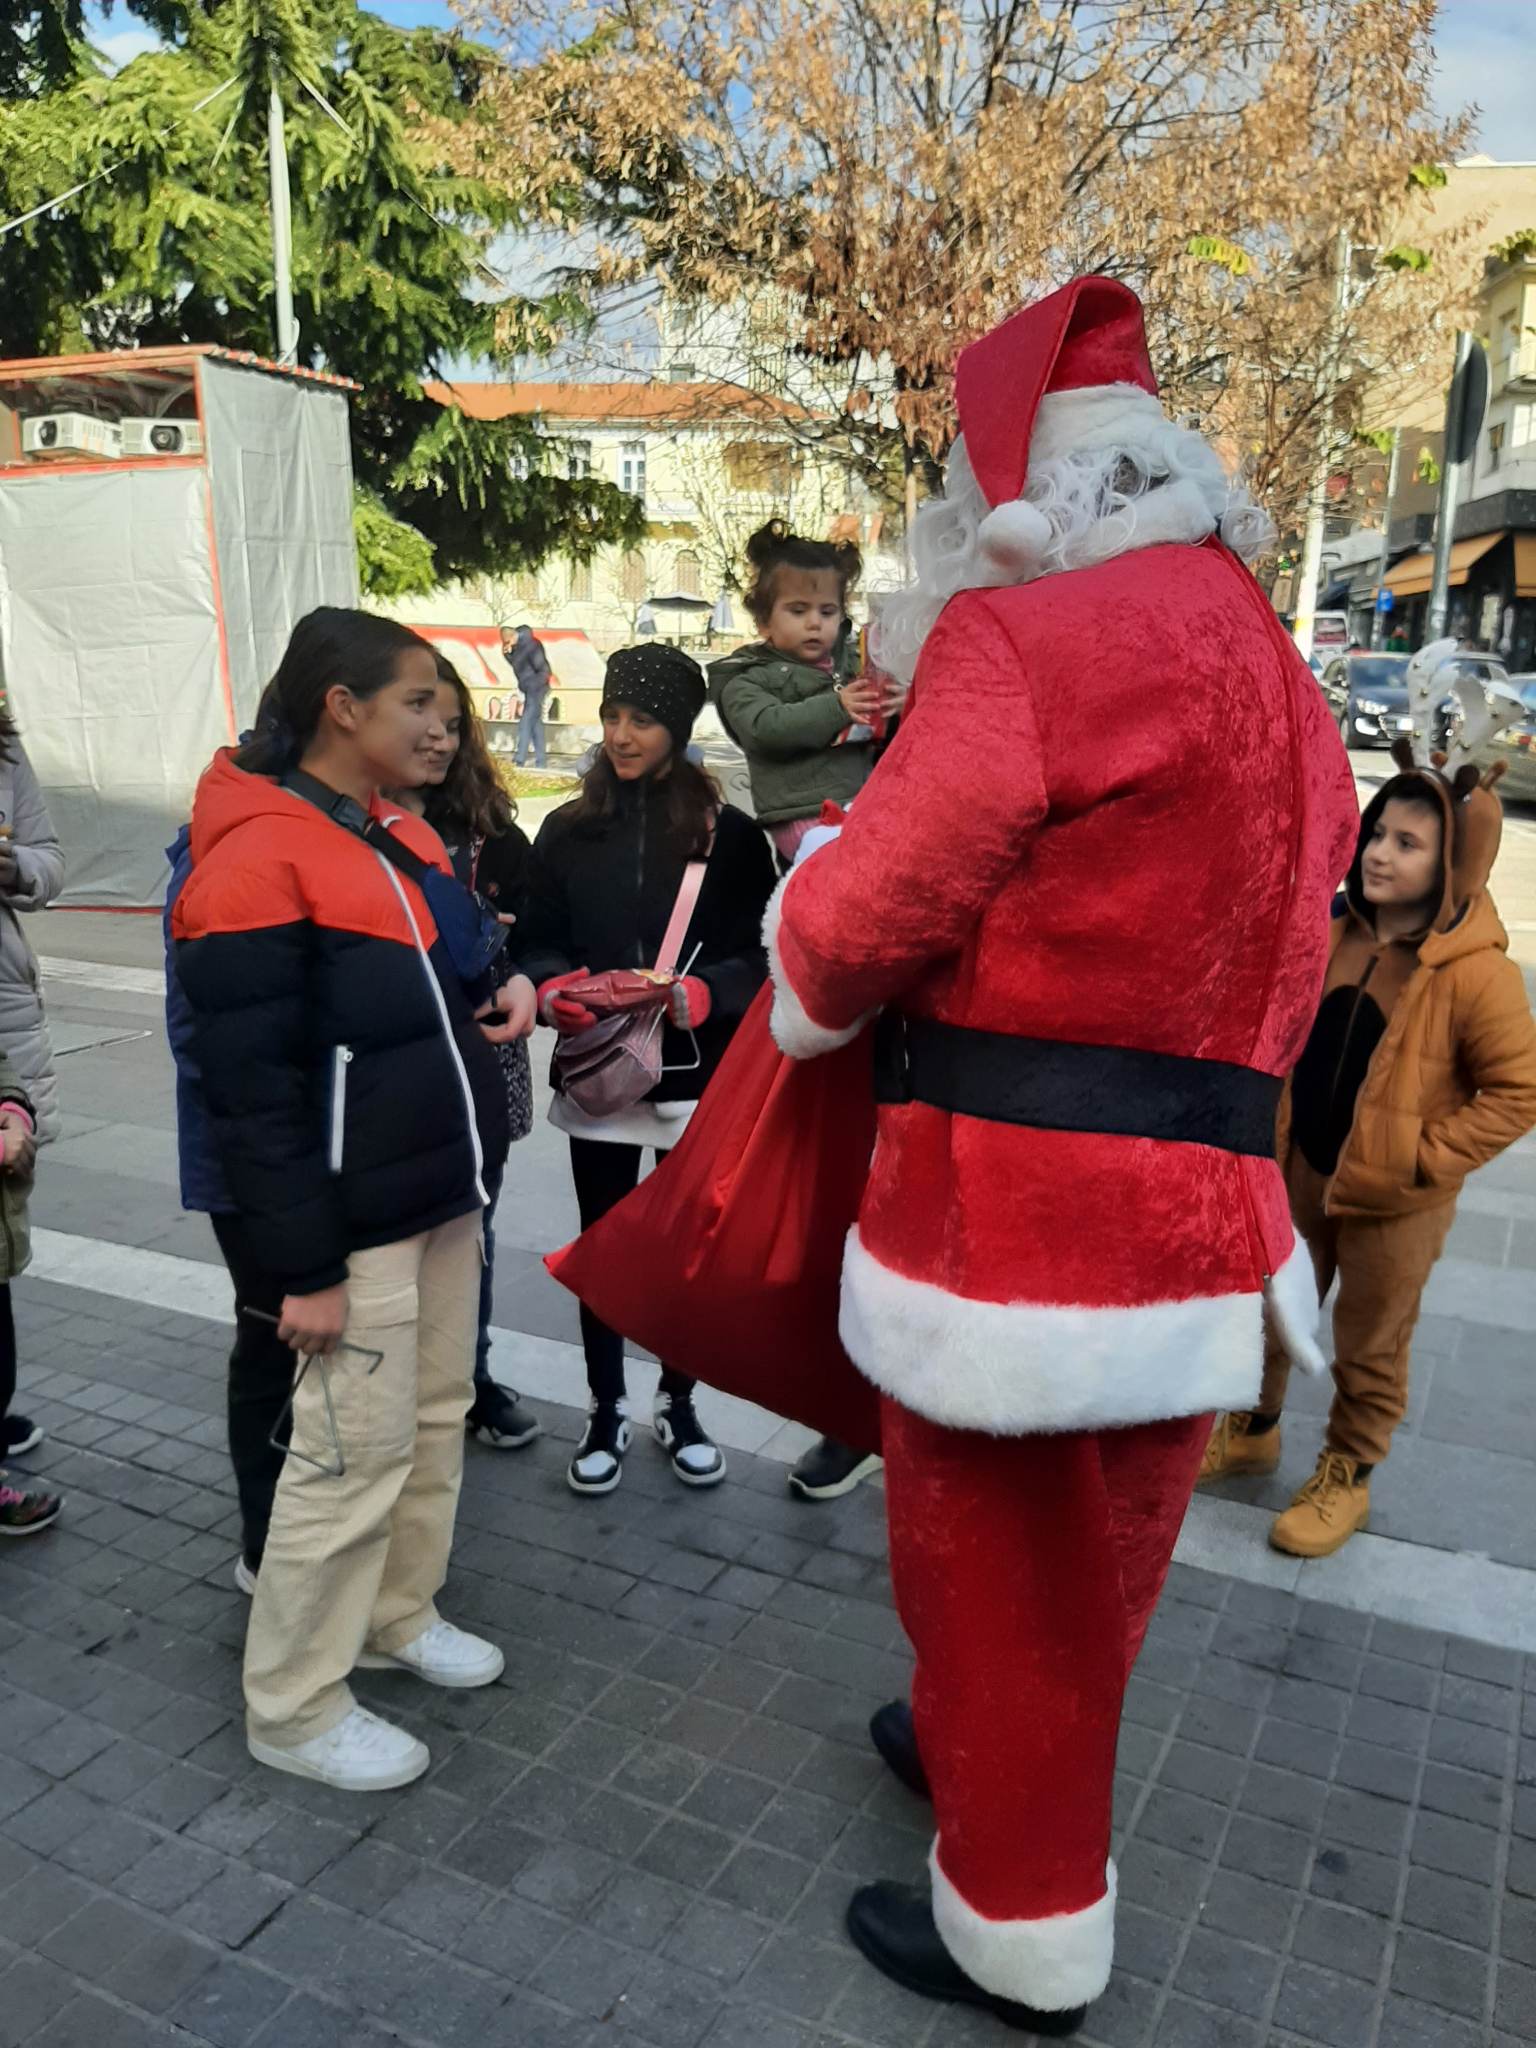 Με περιπολικό “έσπευσε” ο Άγιος Βασίλης στην αγορά της Κοζάνης για να μοιράσει δώρα στα παιδιά (video)